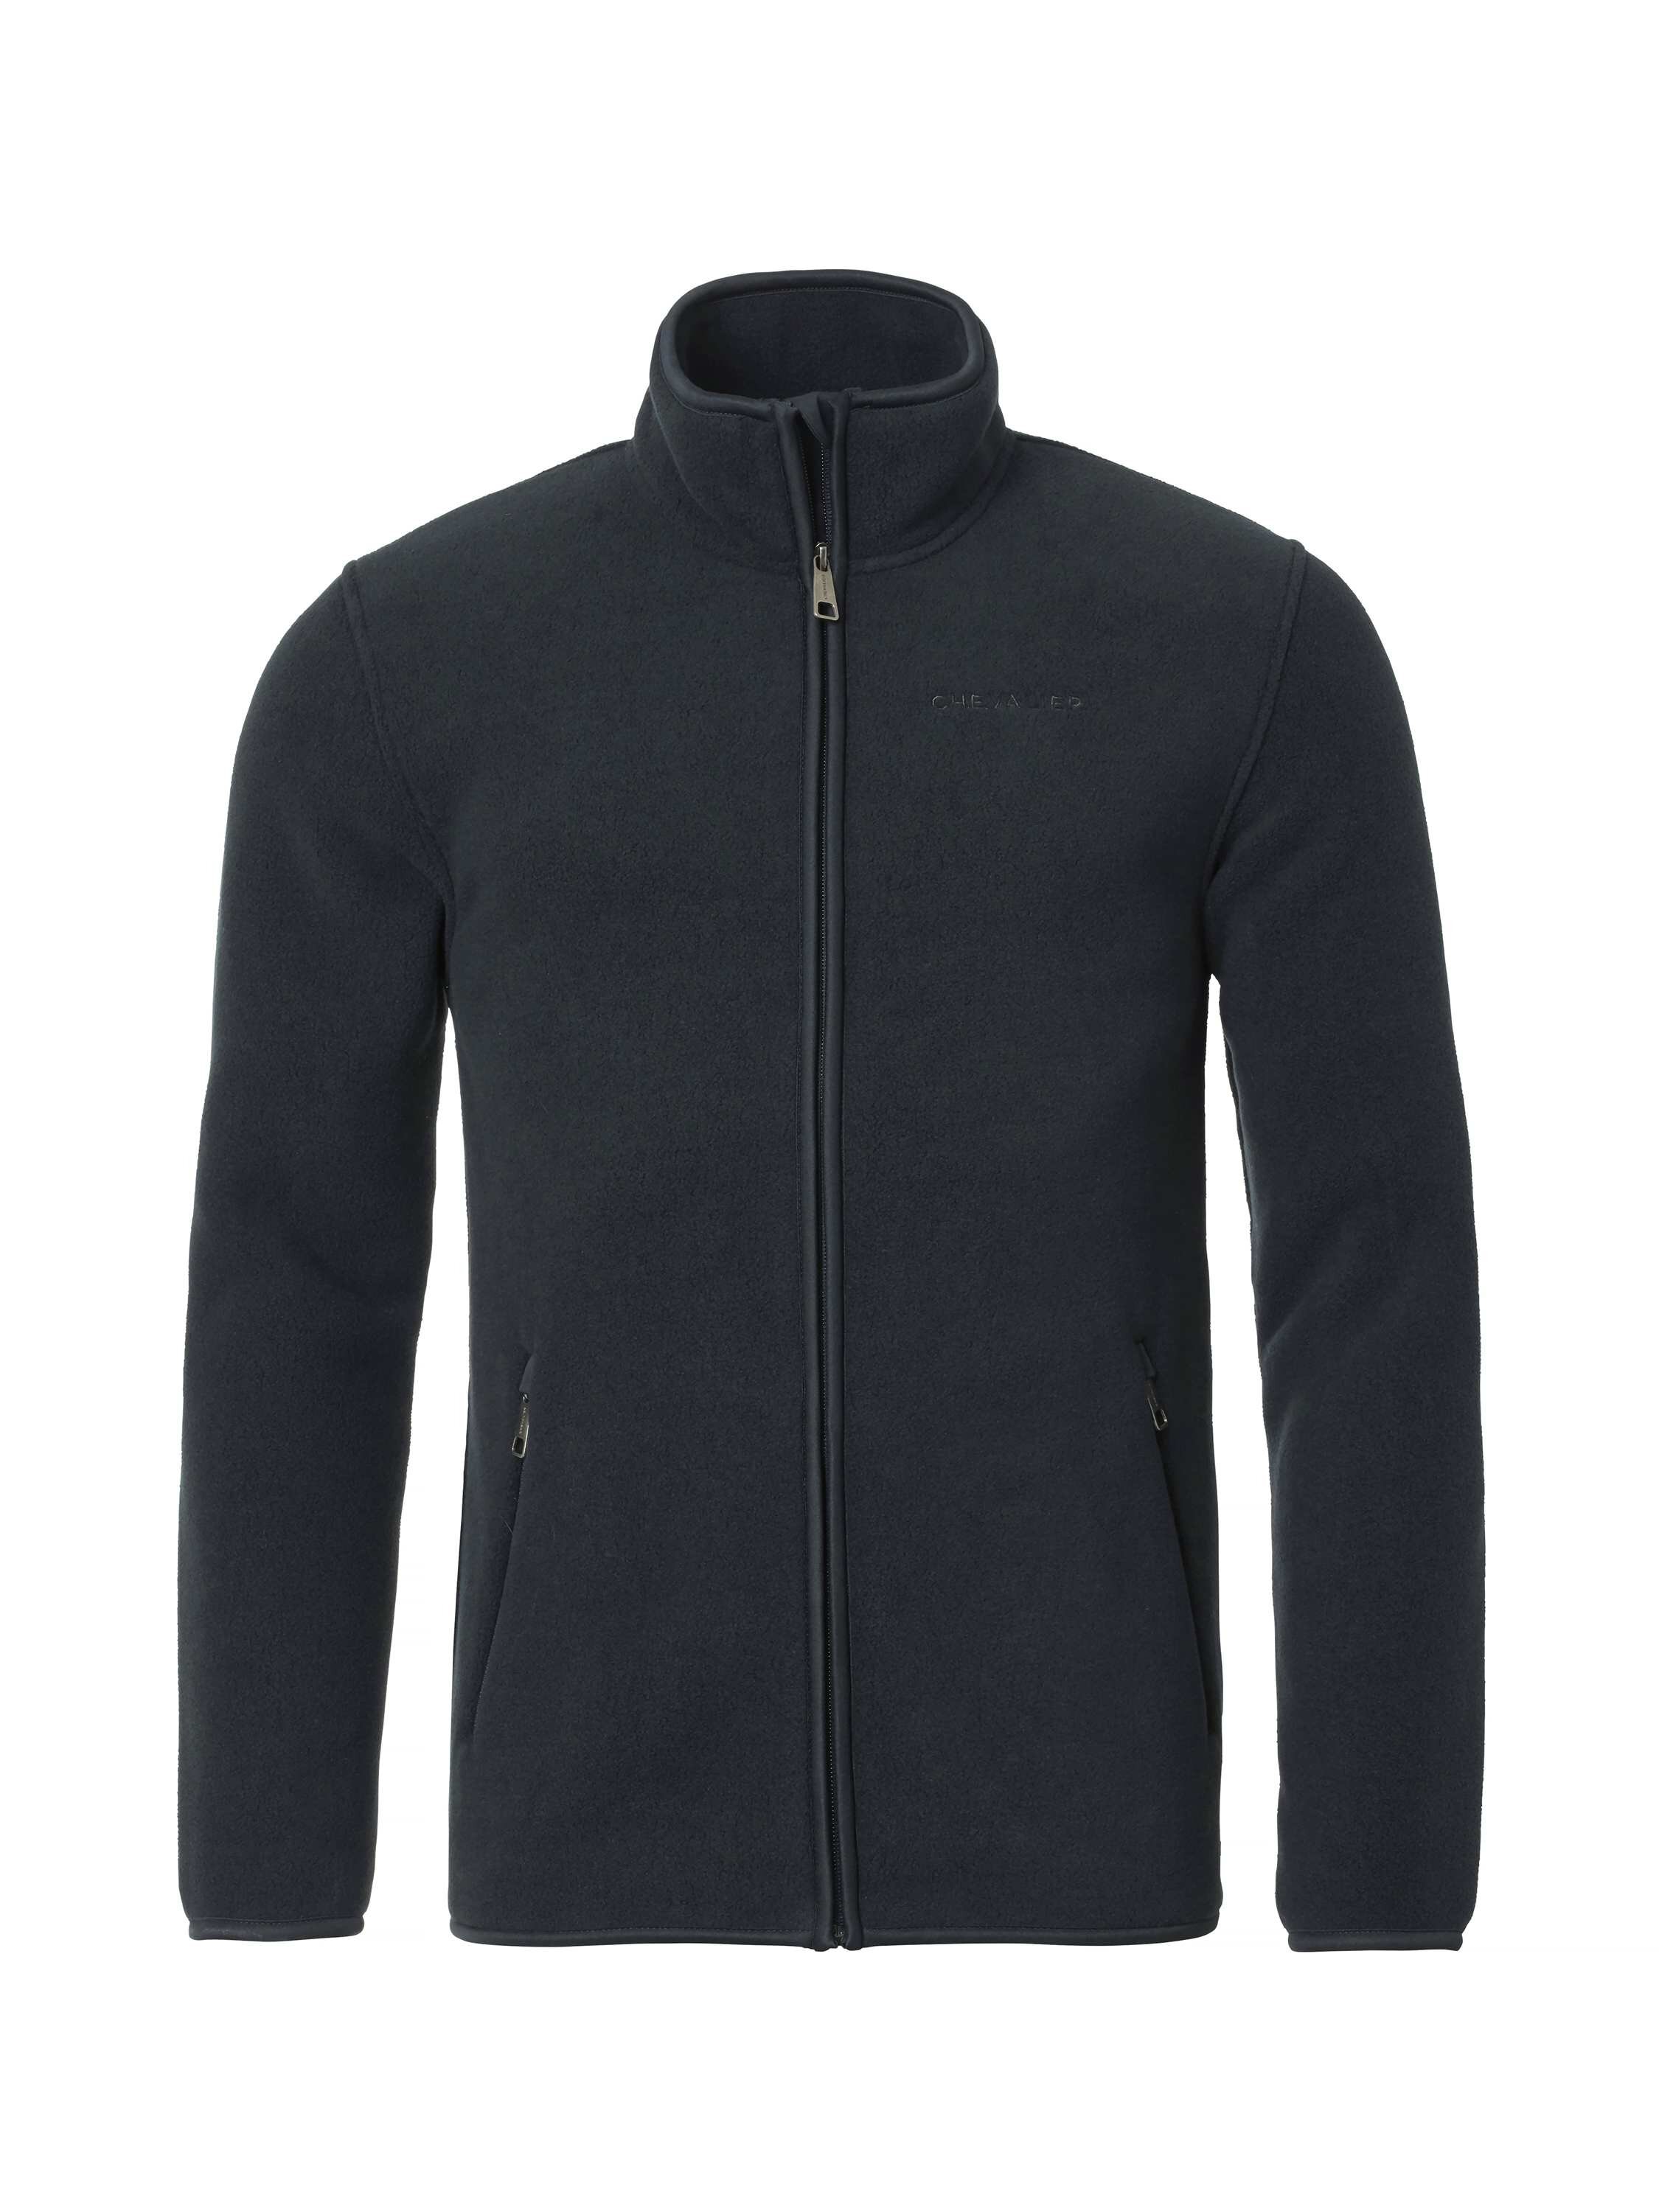 Select Mainstone Fleece Jacket Men